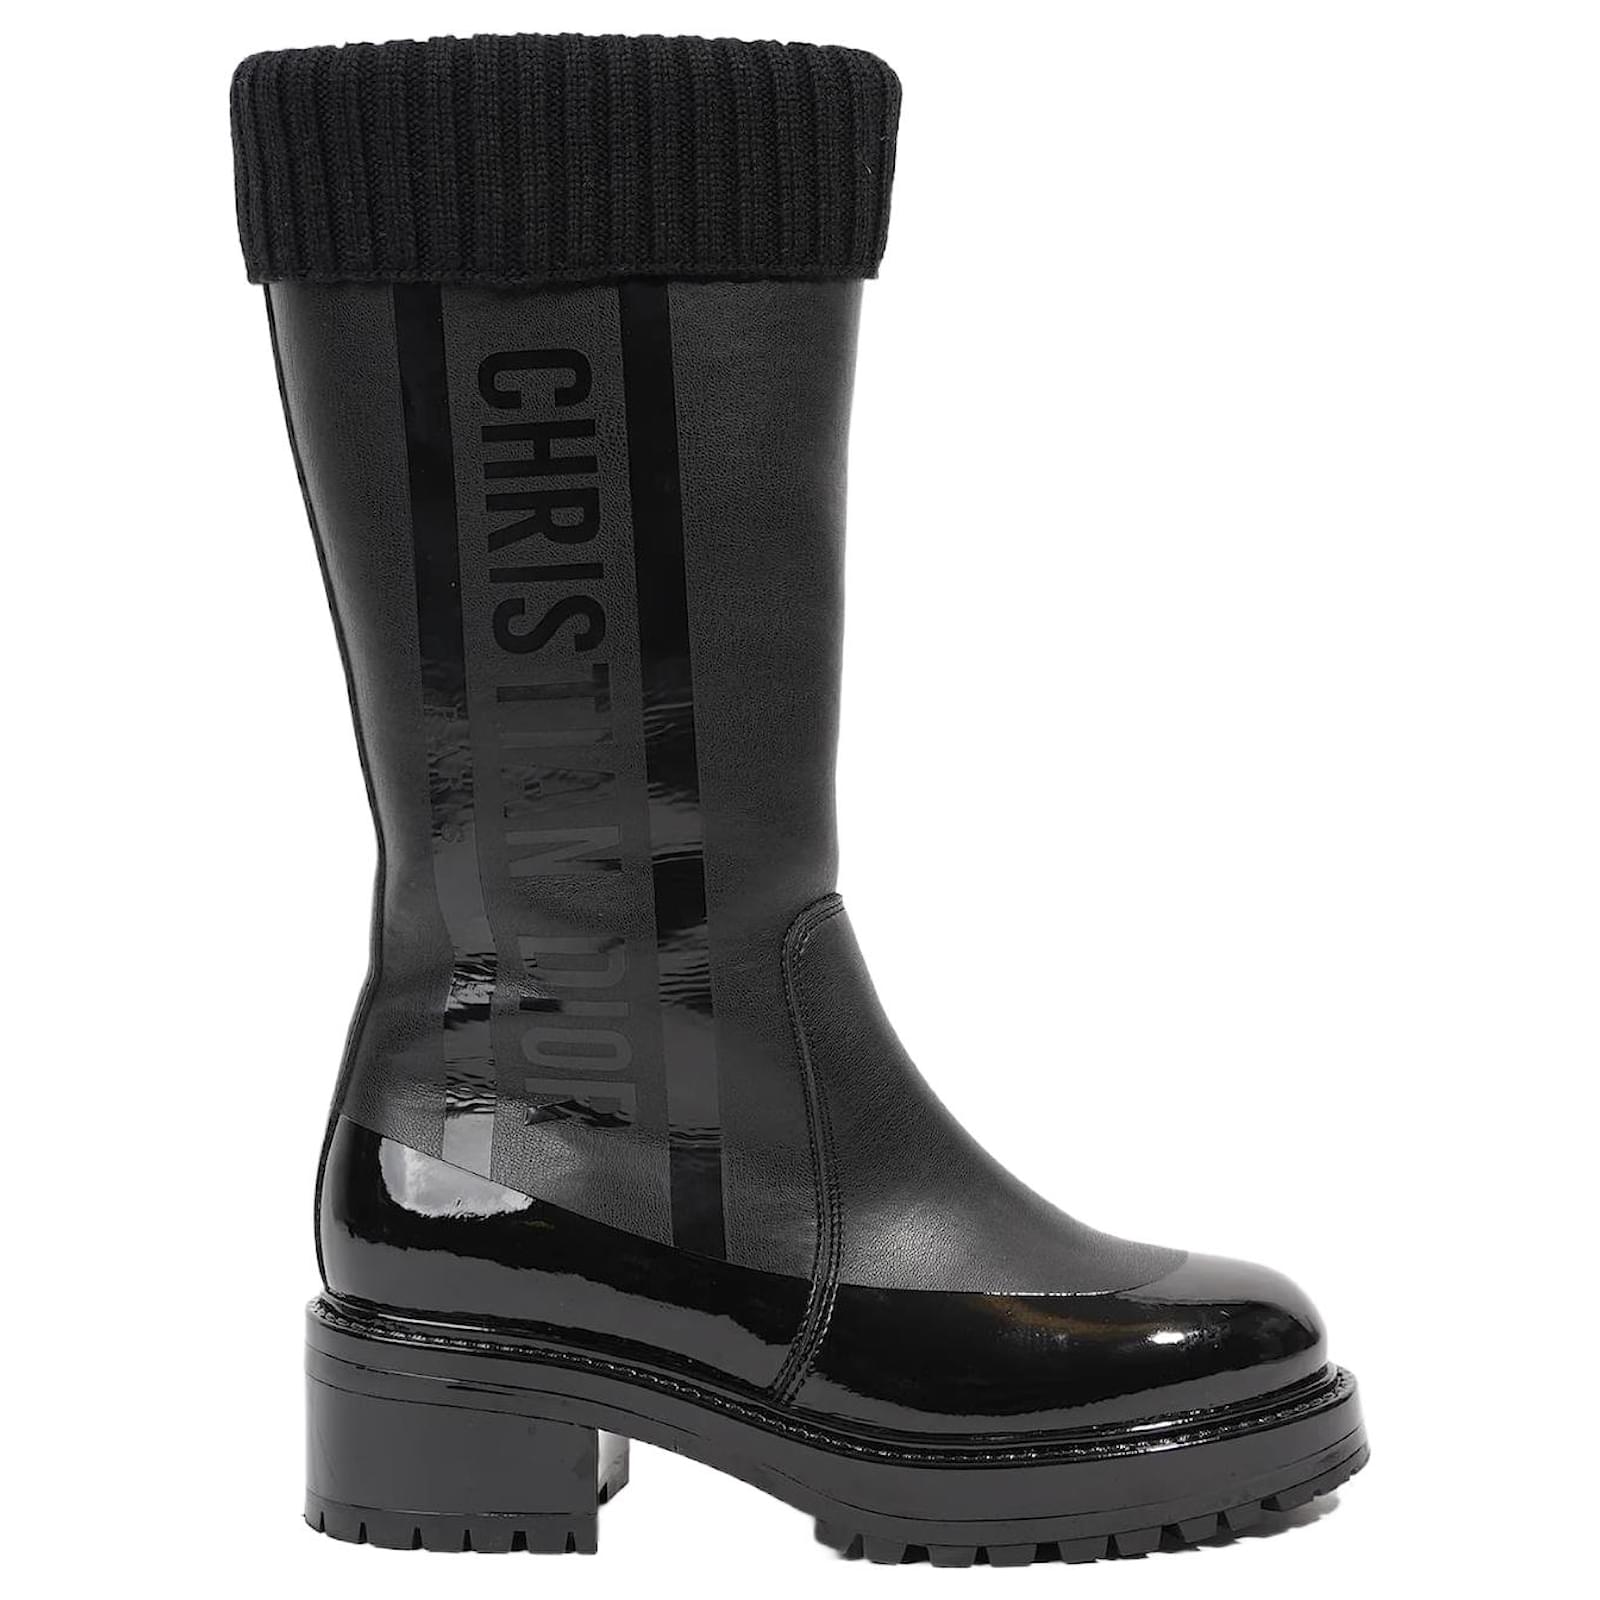 Christian Dior Womens Rain Boots